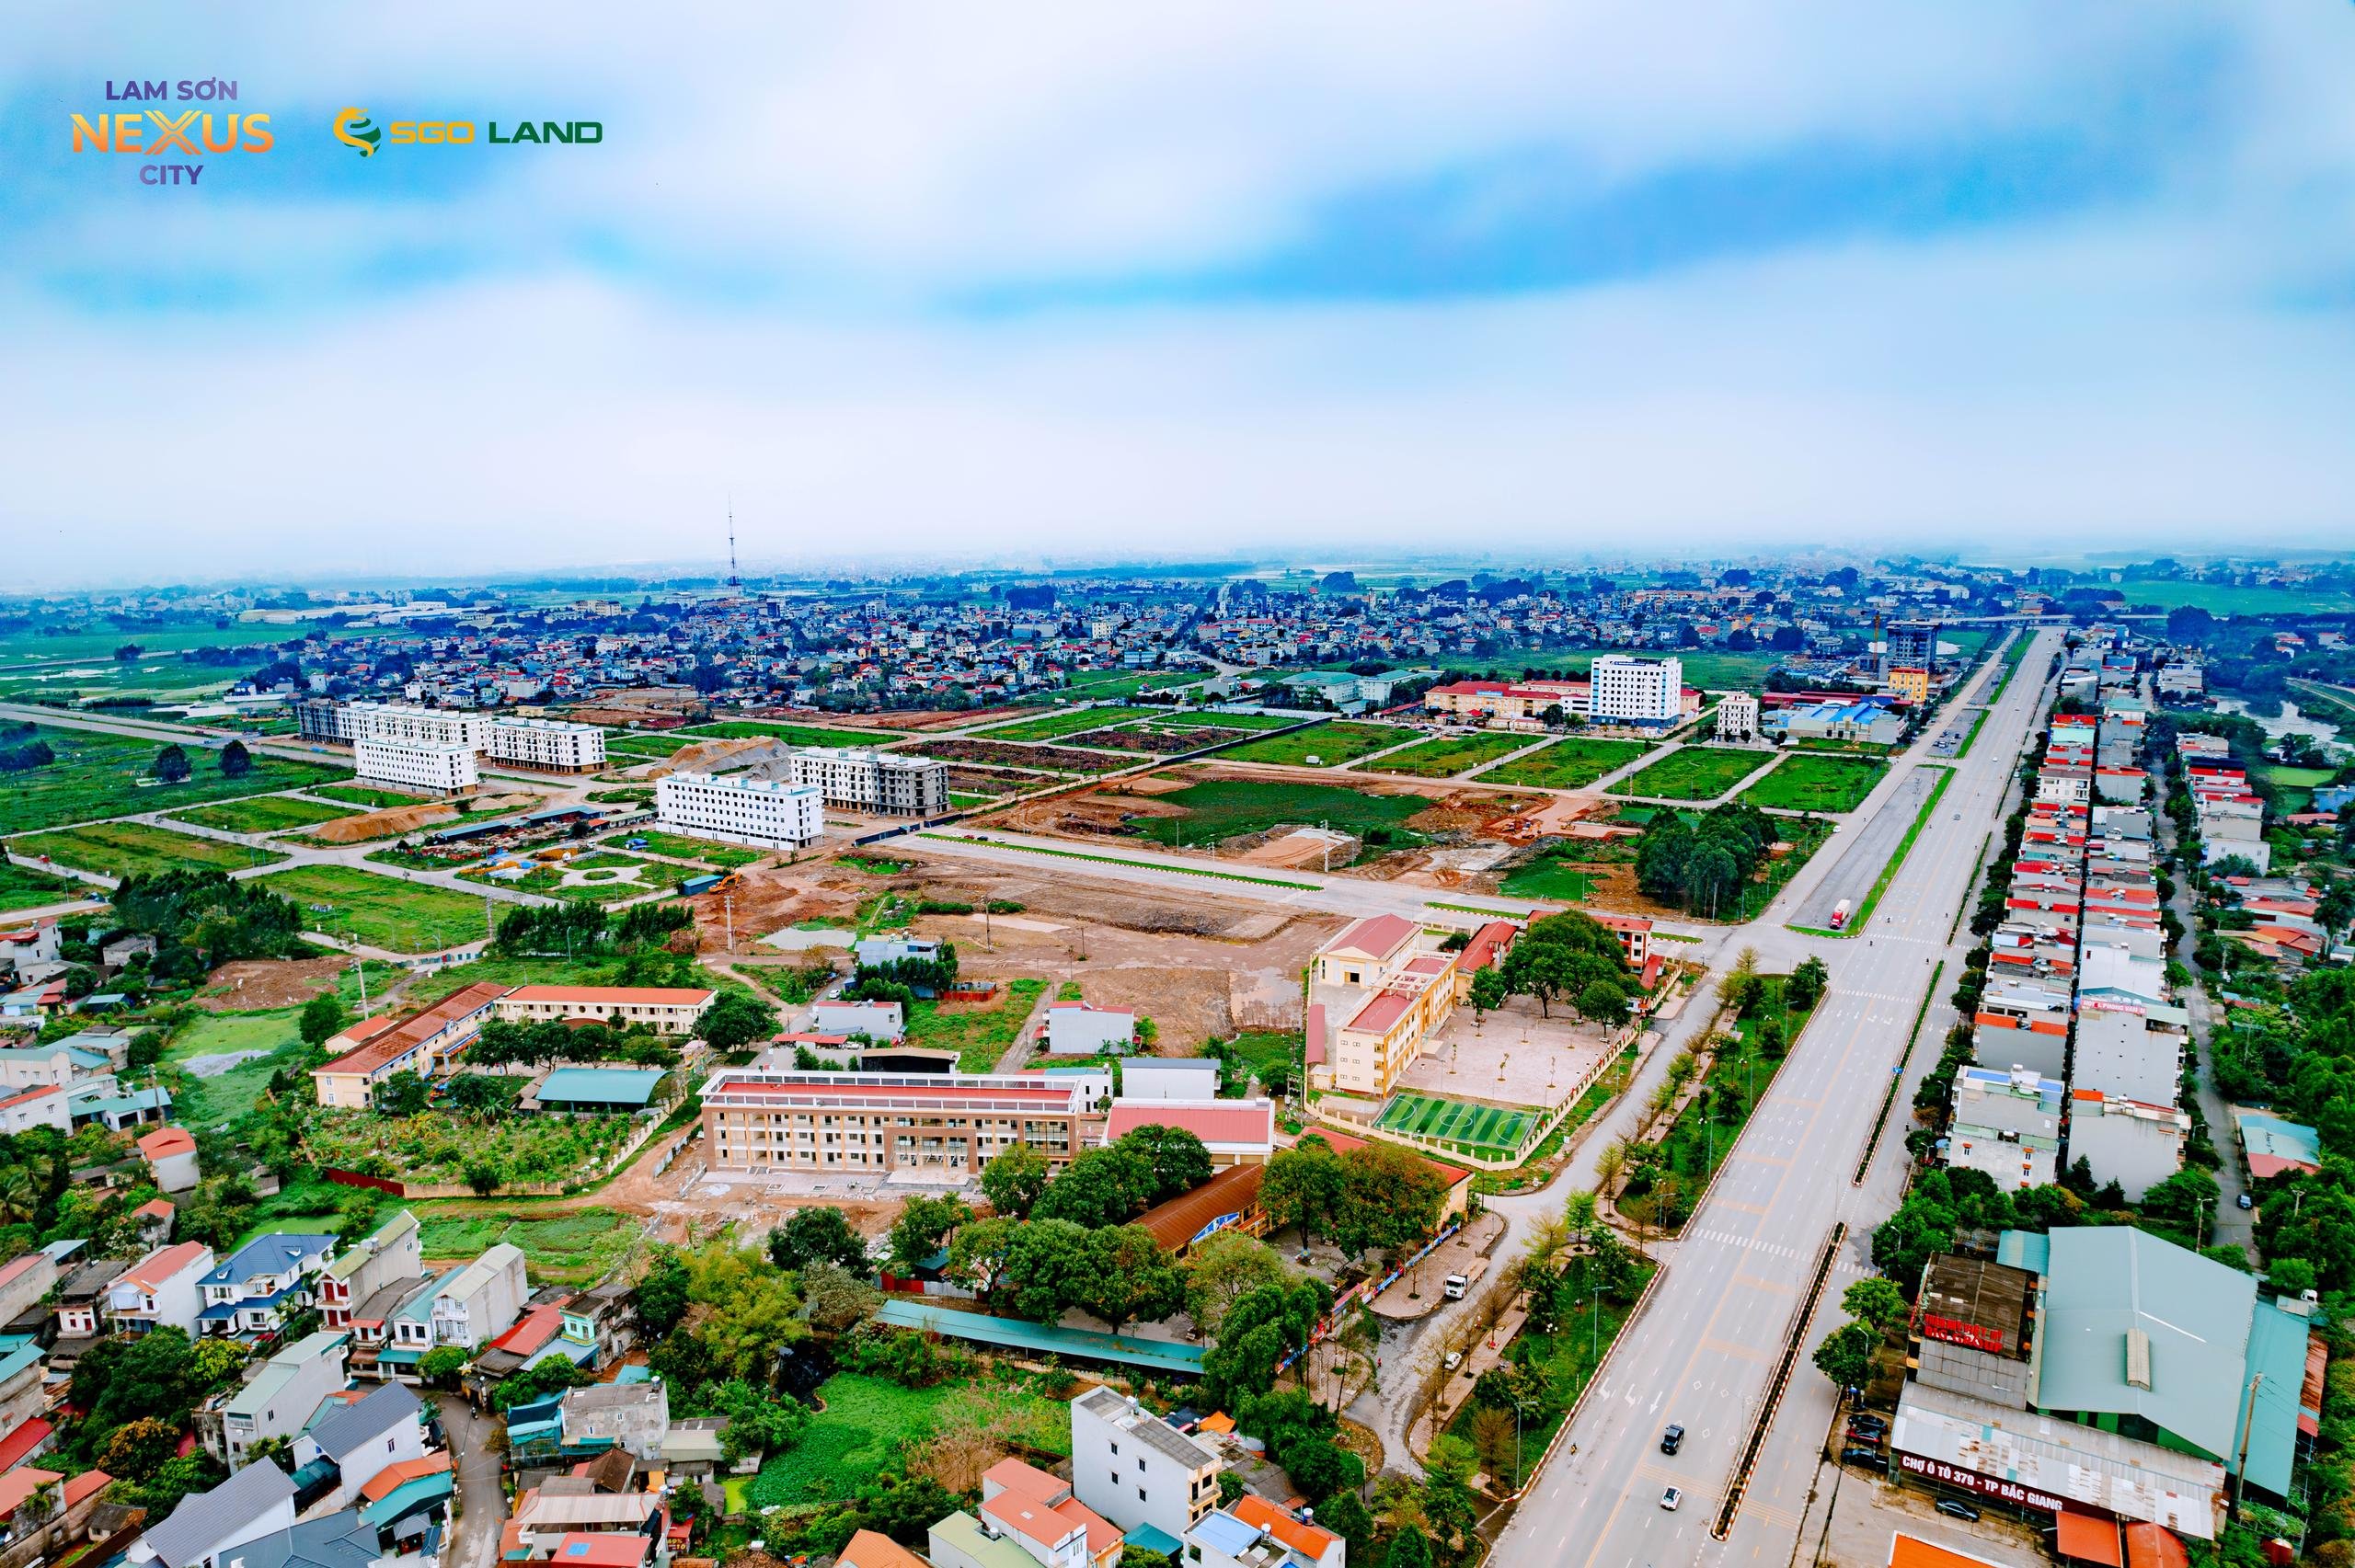 Ra mắt đợt 1 Đất nền dự án Lam Sơn Nexus City Bắc Giang. Giá chỉ 2x tr/m2 sẵn sổ đỏ 2